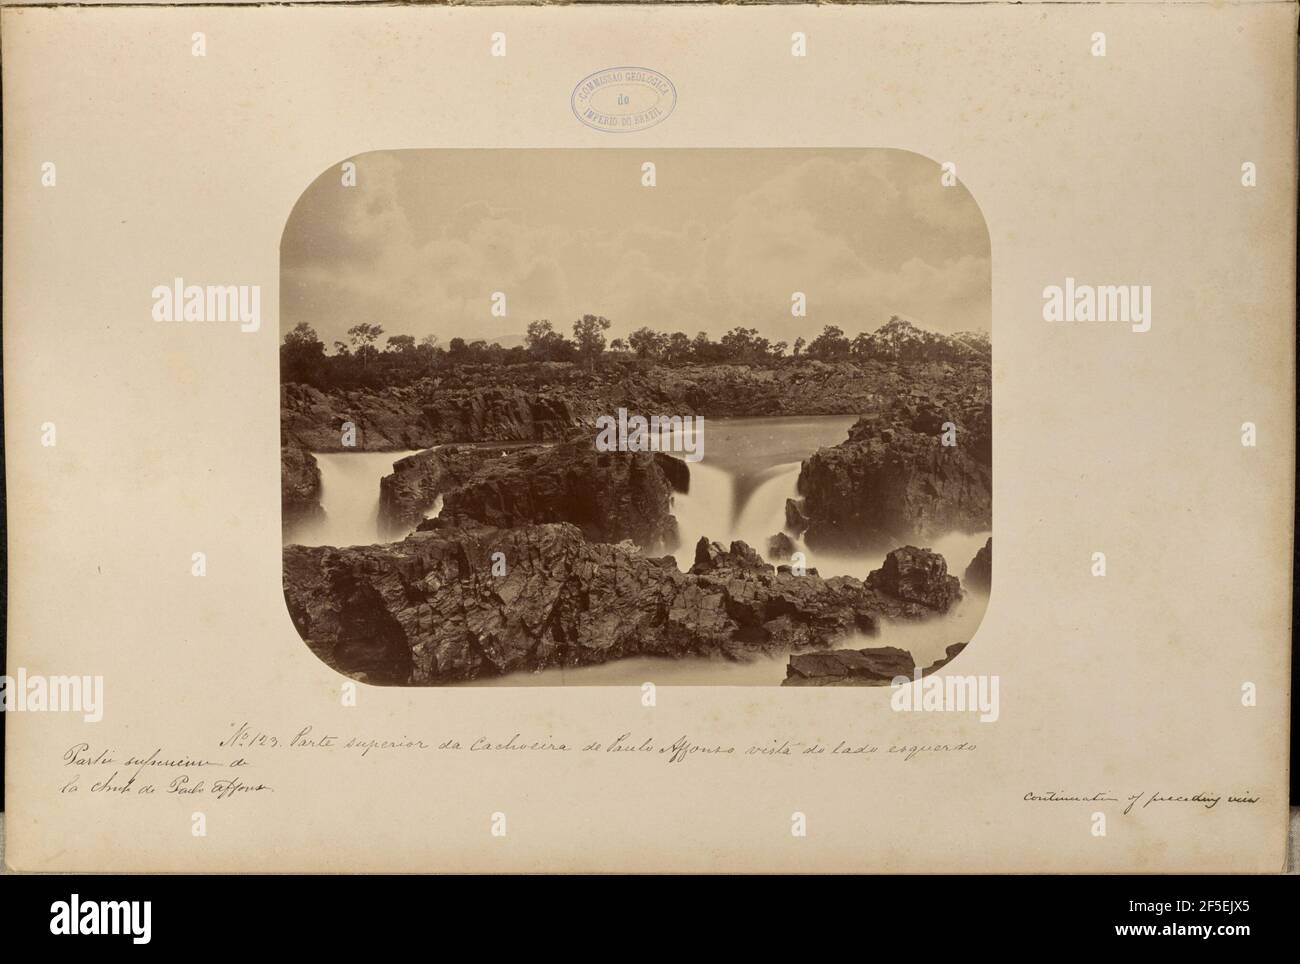 Parte superior da Cachoeira de Paulo Affonso vista do lado esquerdo. Marc Ferrez (Brazilian, 1843 - 1923) Stock Photo